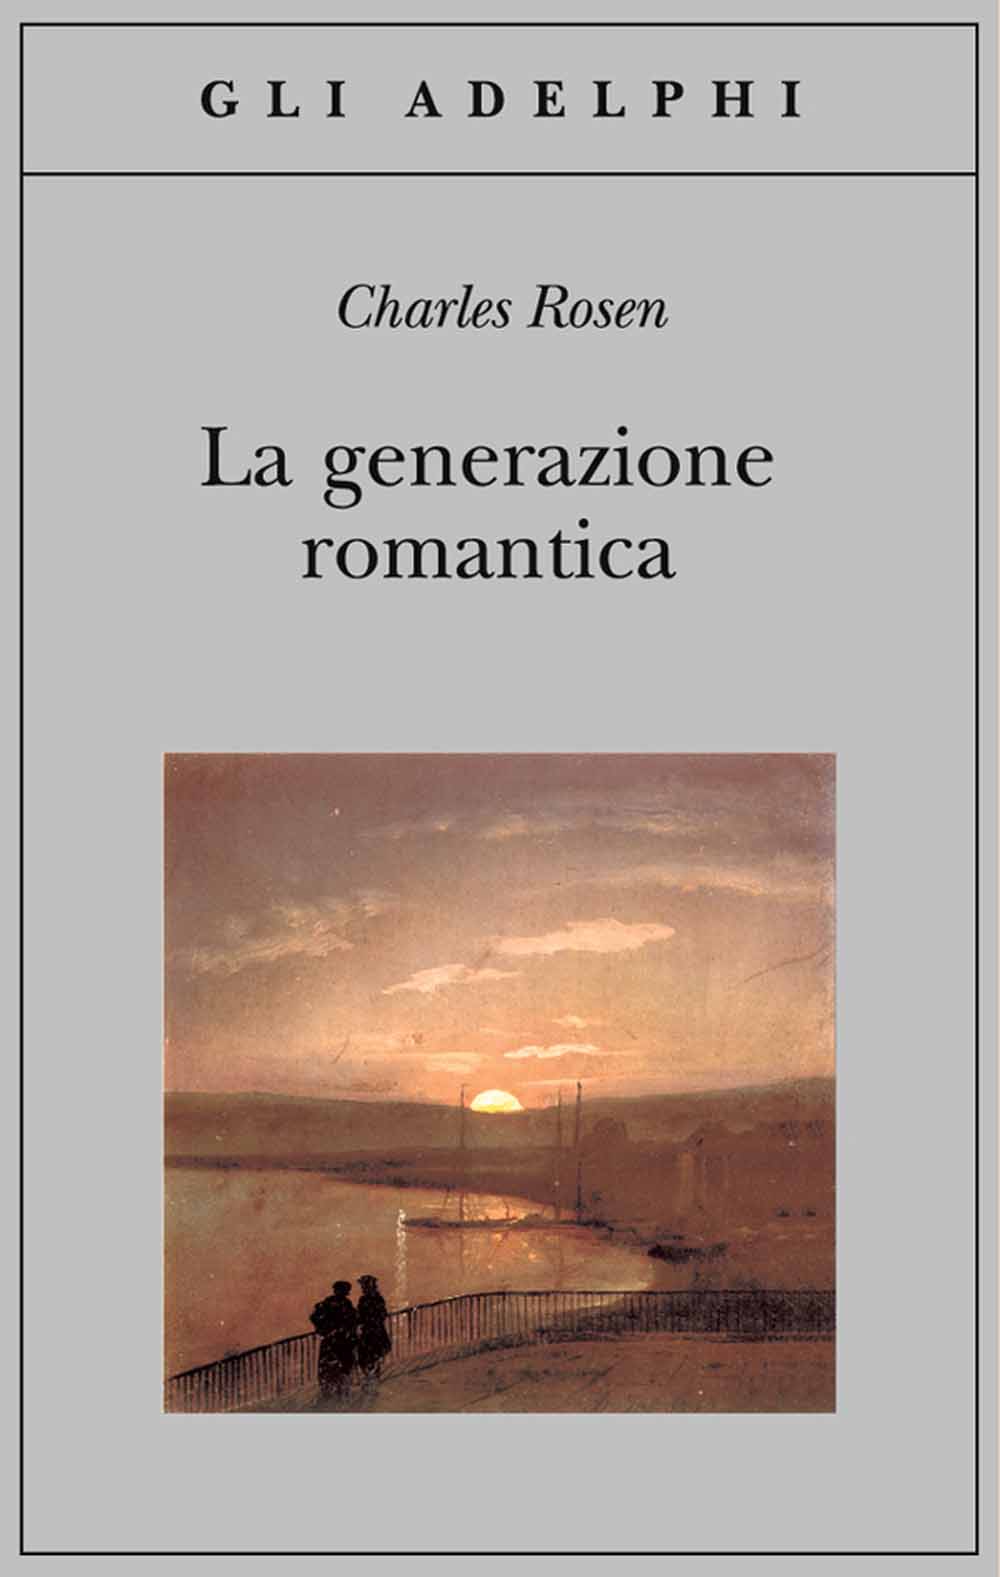 Libri Charles Rosen - La Generazione Romantica NUOVO SIGILLATO, EDIZIONE DEL 02/11/2005 SUBITO DISPONIBILE